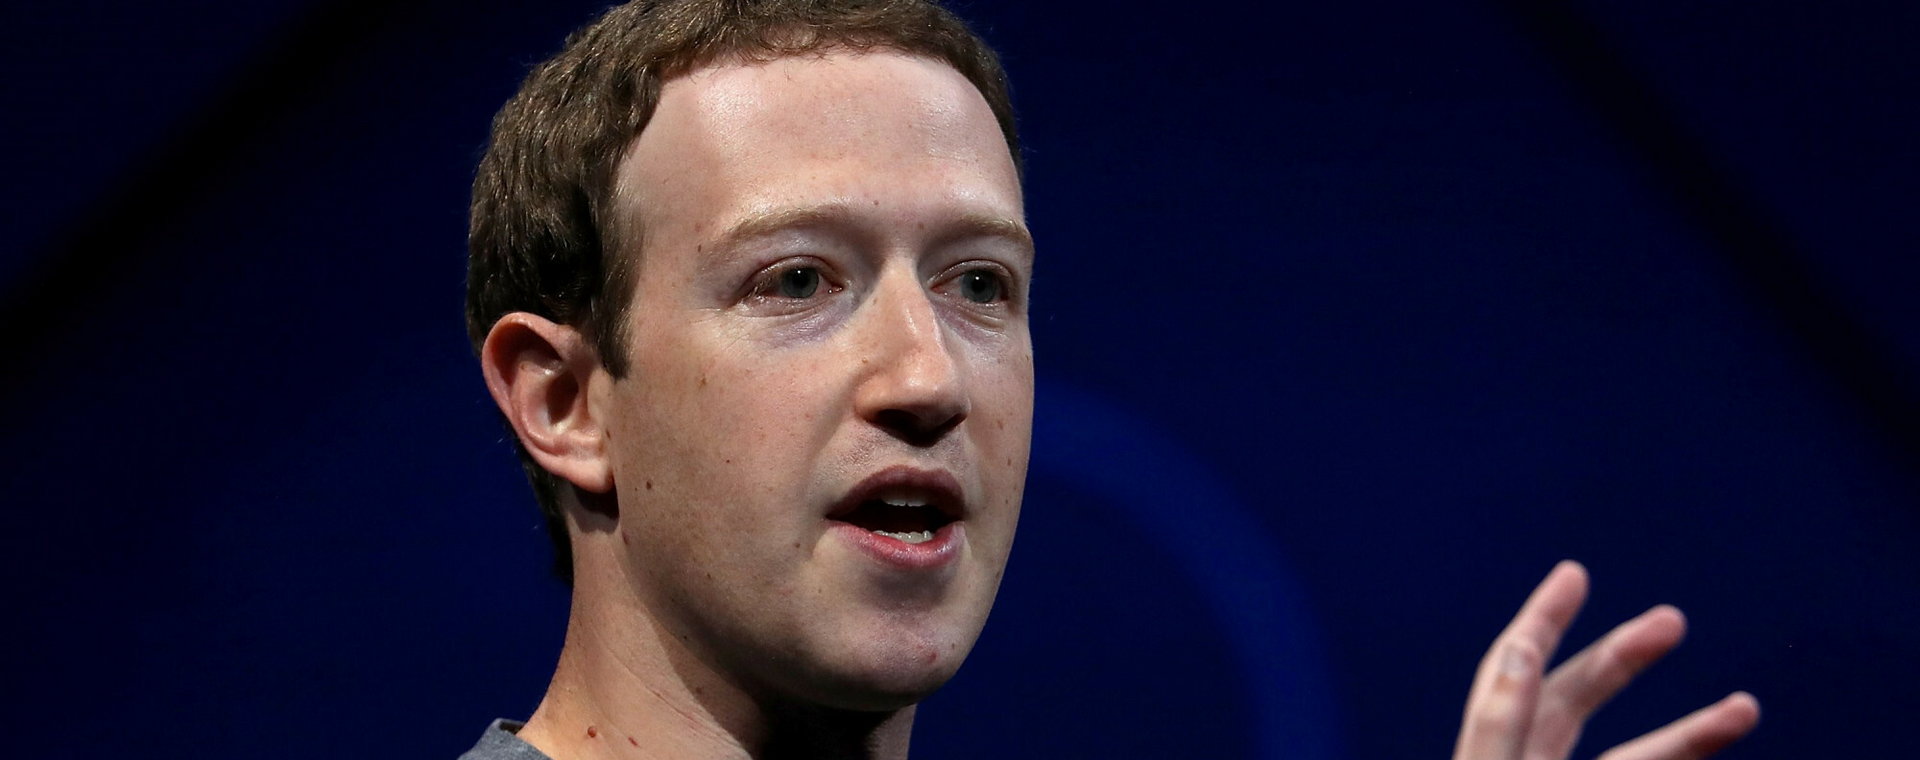 Mark Zuckerberg przyjął odpowiedzialność za błąd, który doprowadził do redukcji 11 tys. miejsc pracy w Mecie